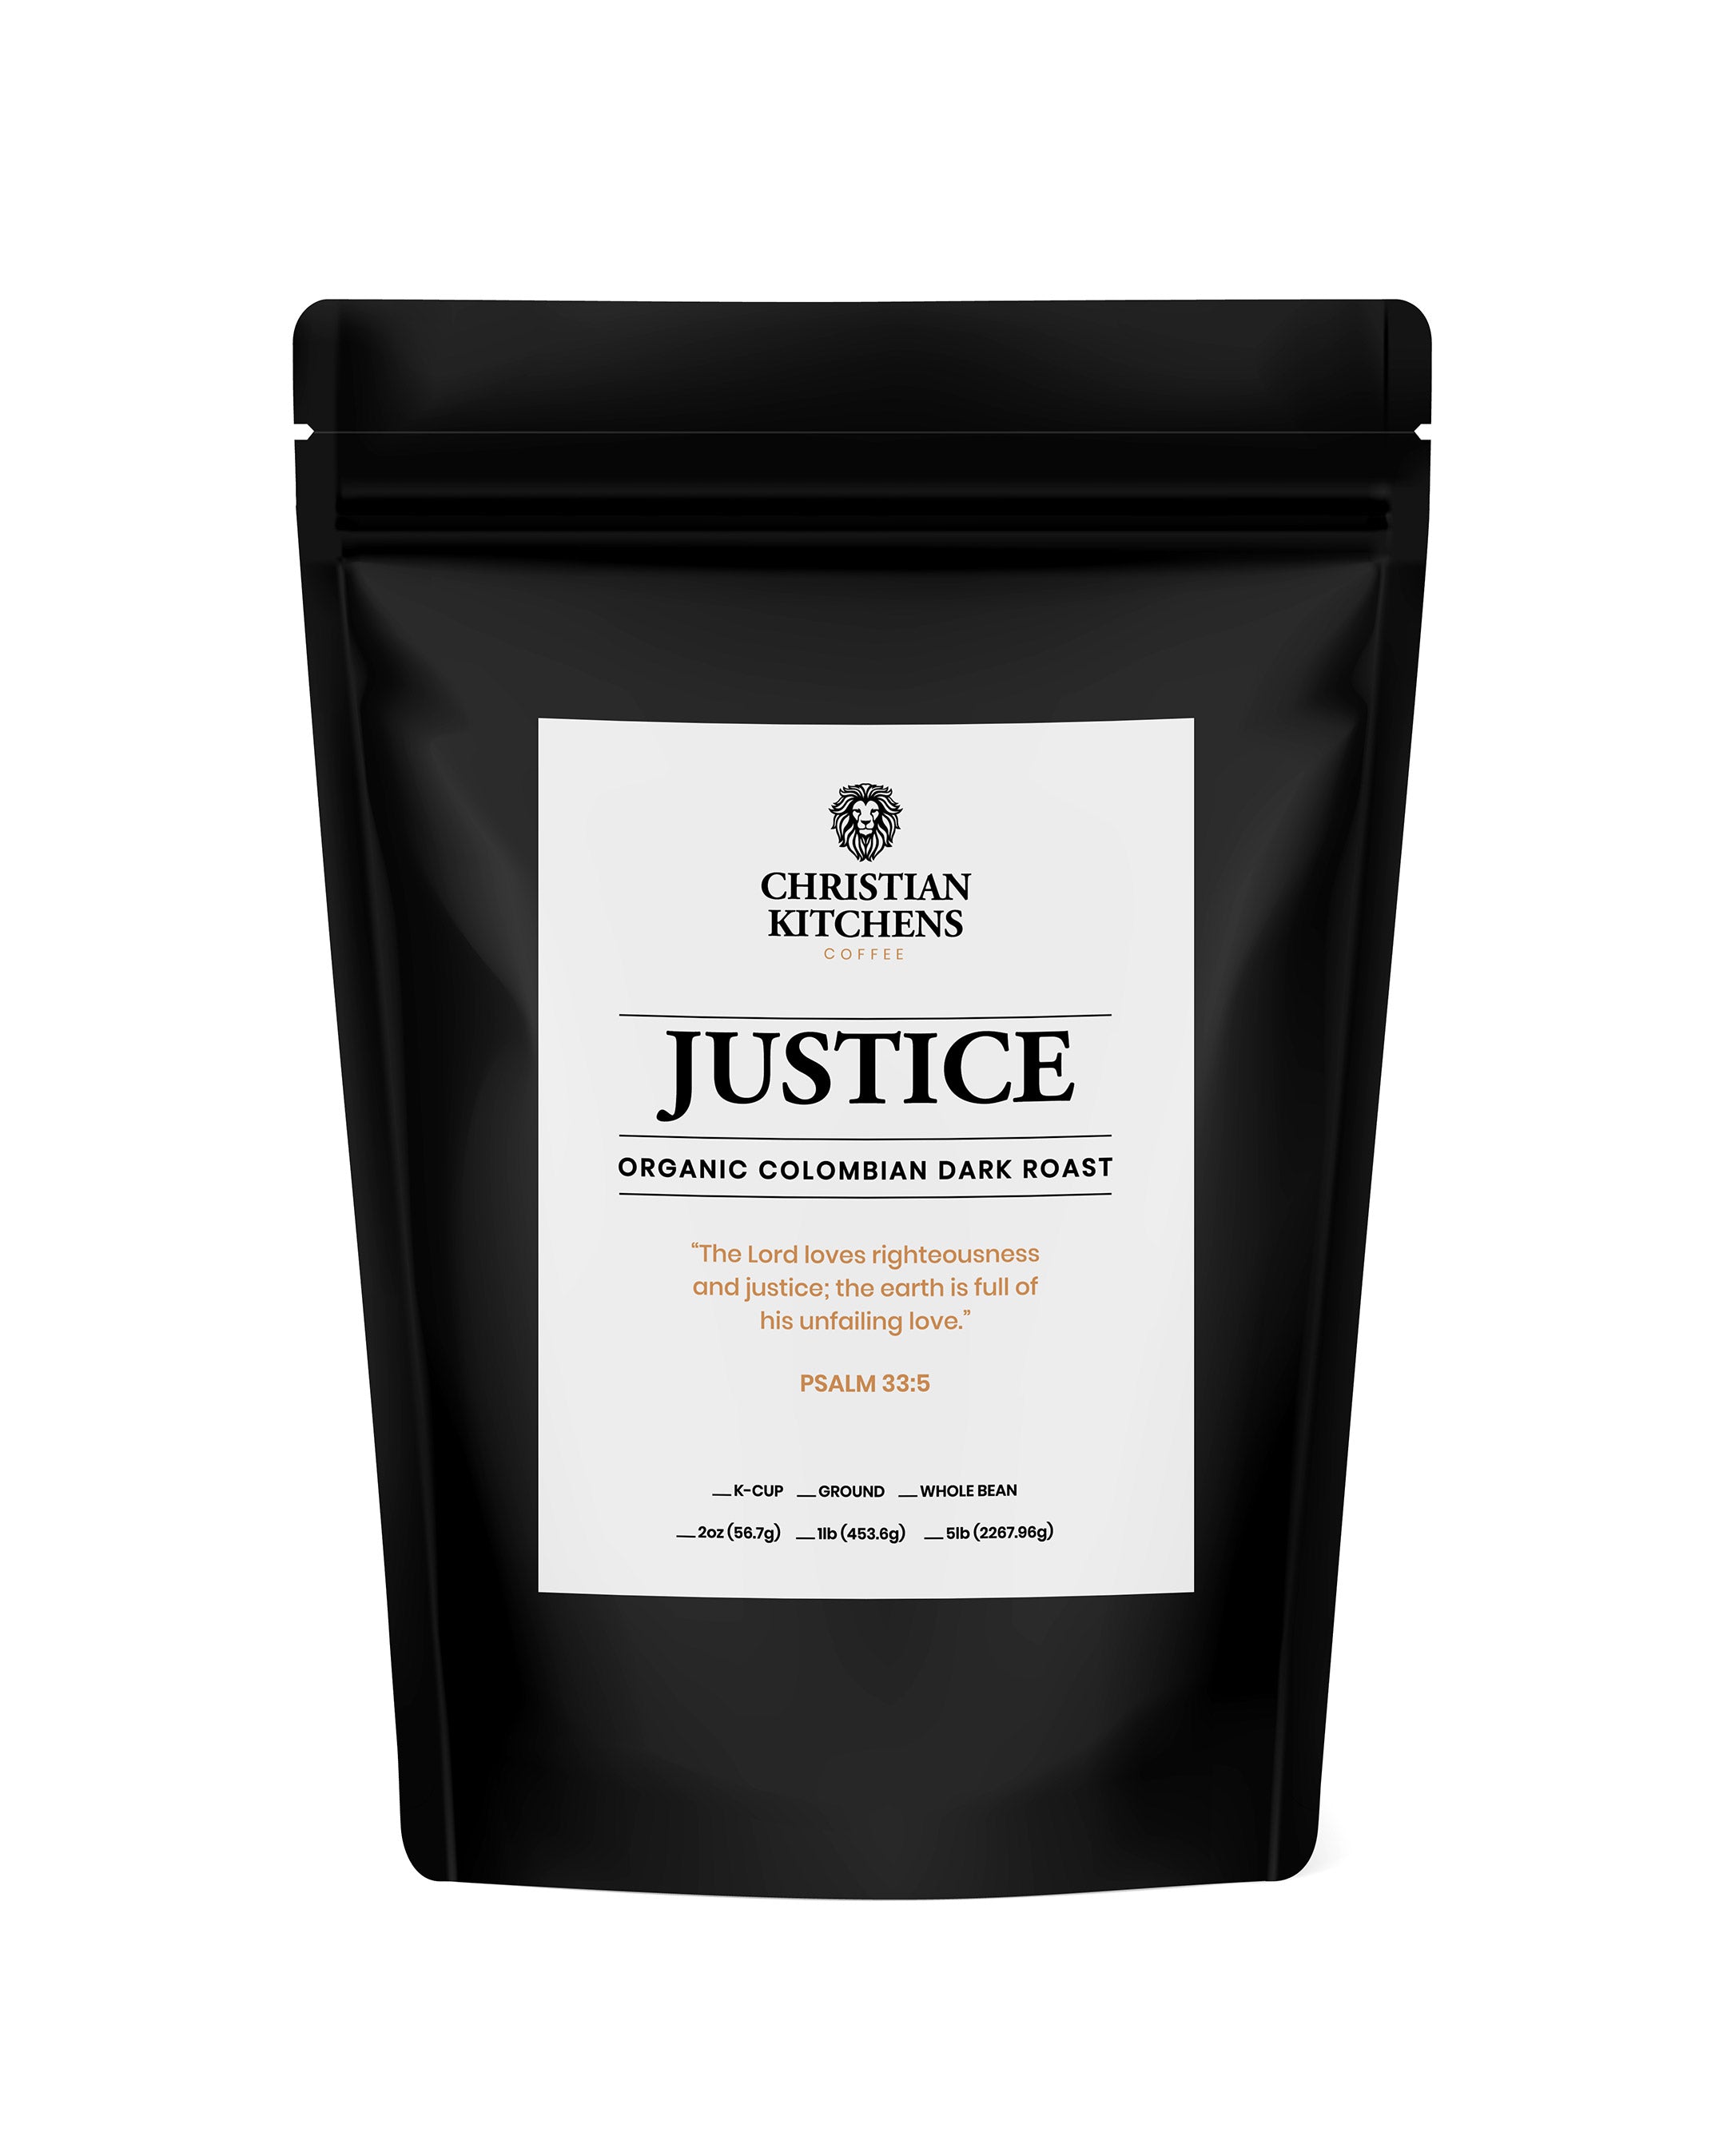 Judge Alito's Bold Justice Blend Coffee - 1 lb (16 oz)